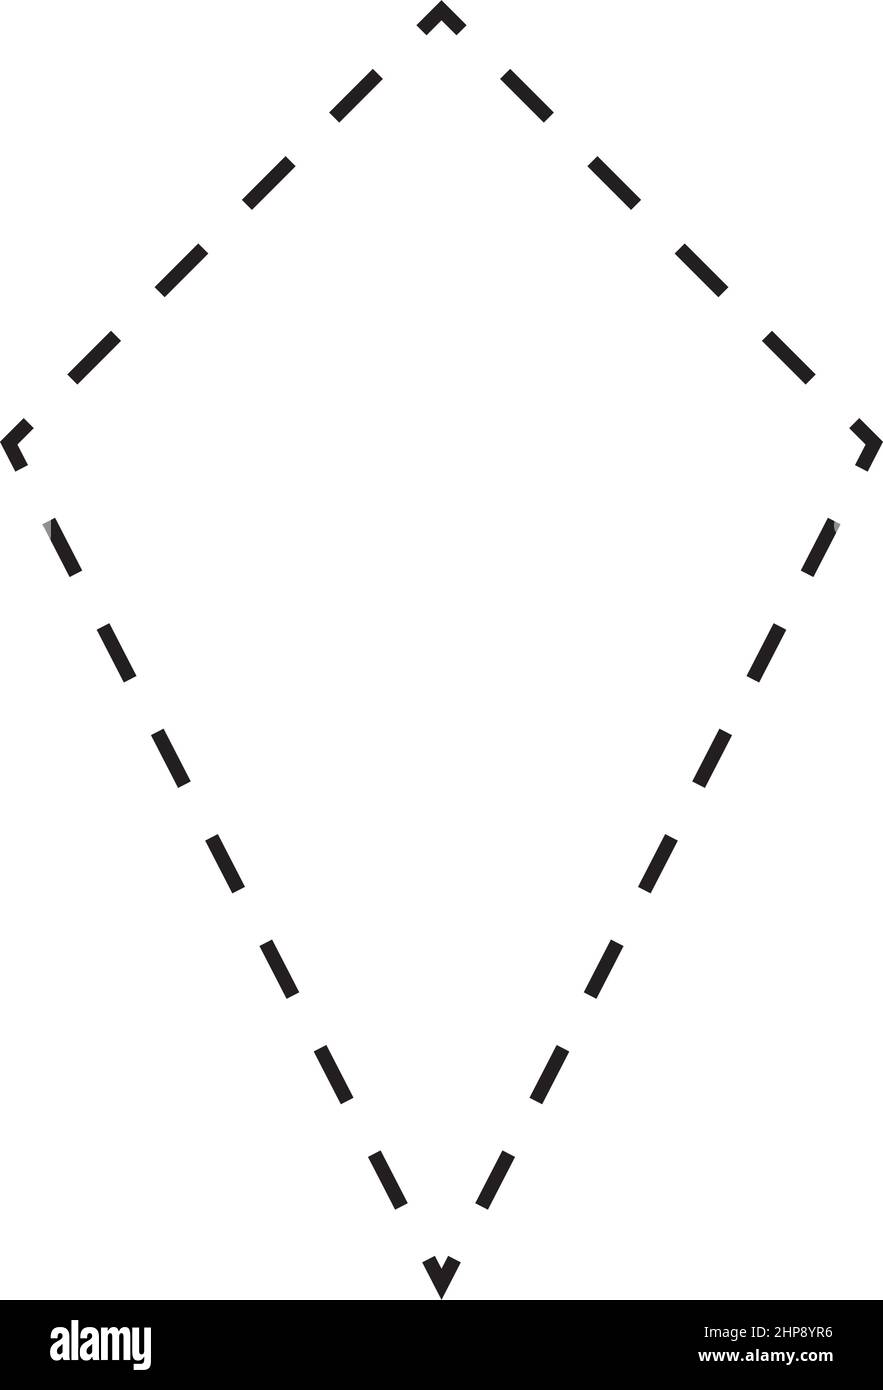 Kite Symbol gestrichelte Form Vektor-Symbol für kreative Grafik-Design ui-Element in einem Piktogramm Illustration Stock Vektor